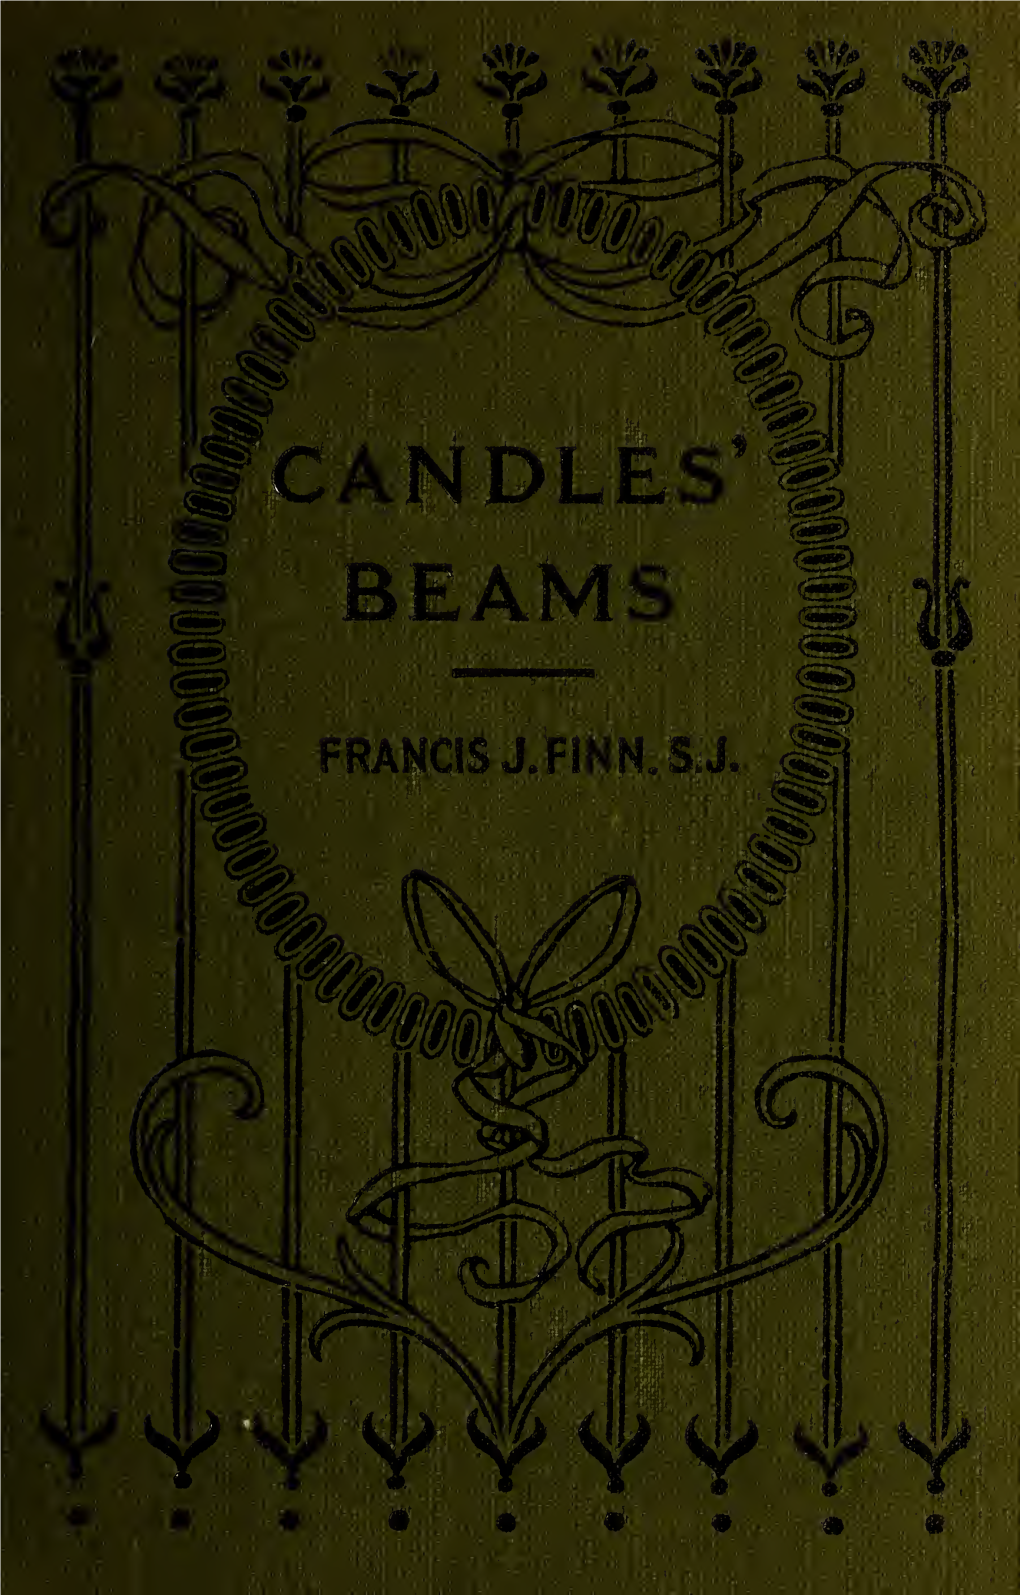 Candles' Beams